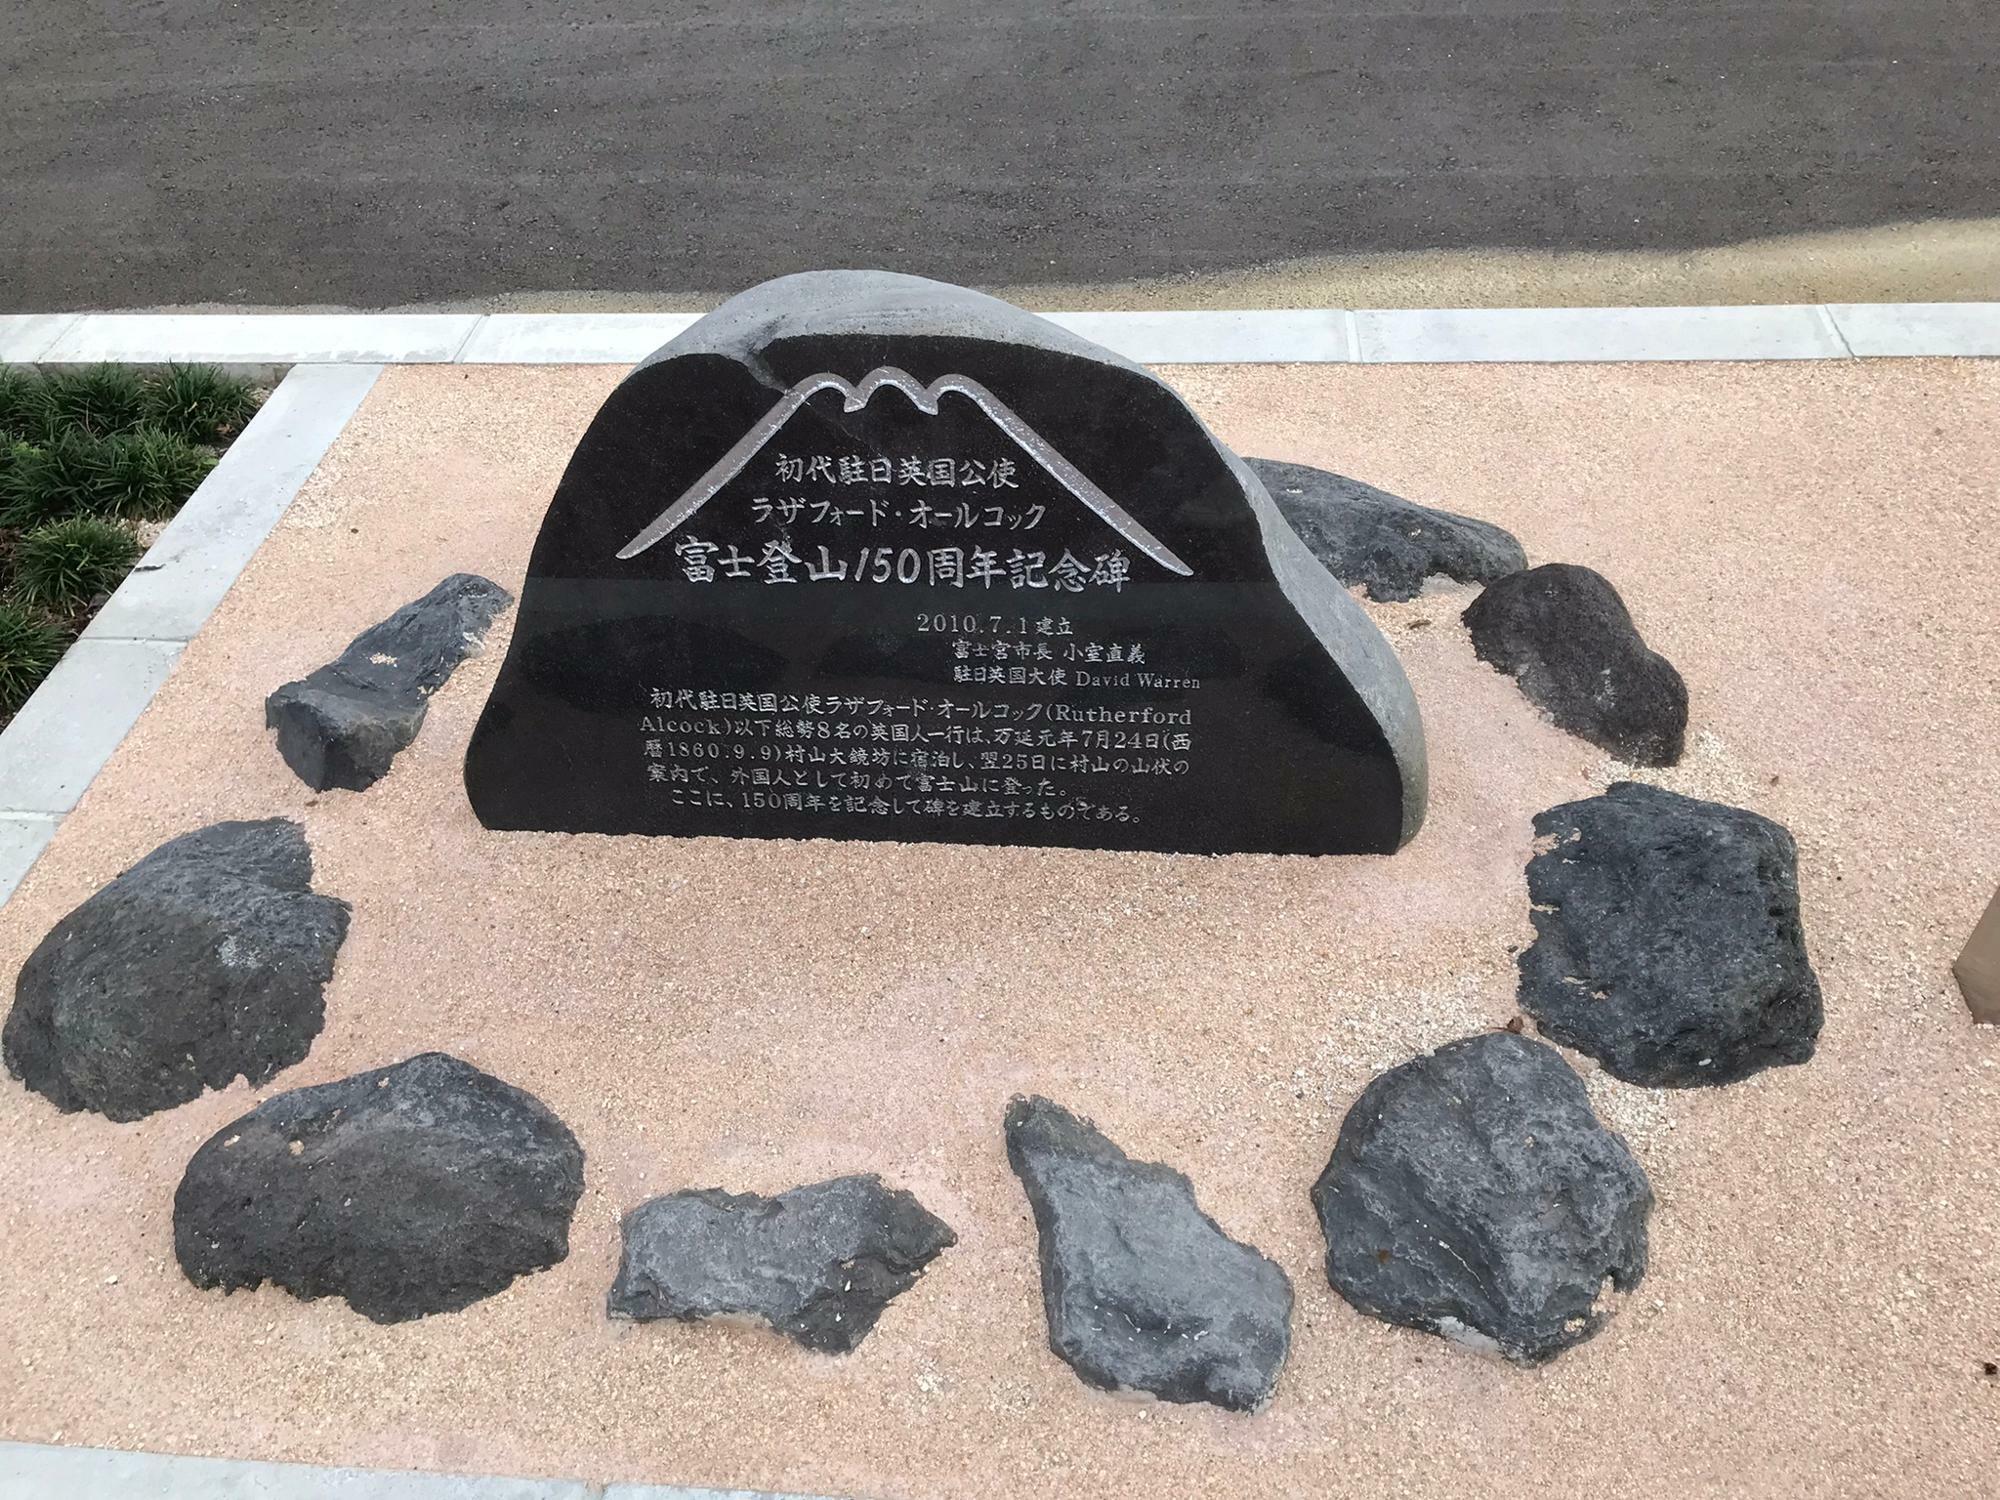 オールコック富士登山150周年記念碑